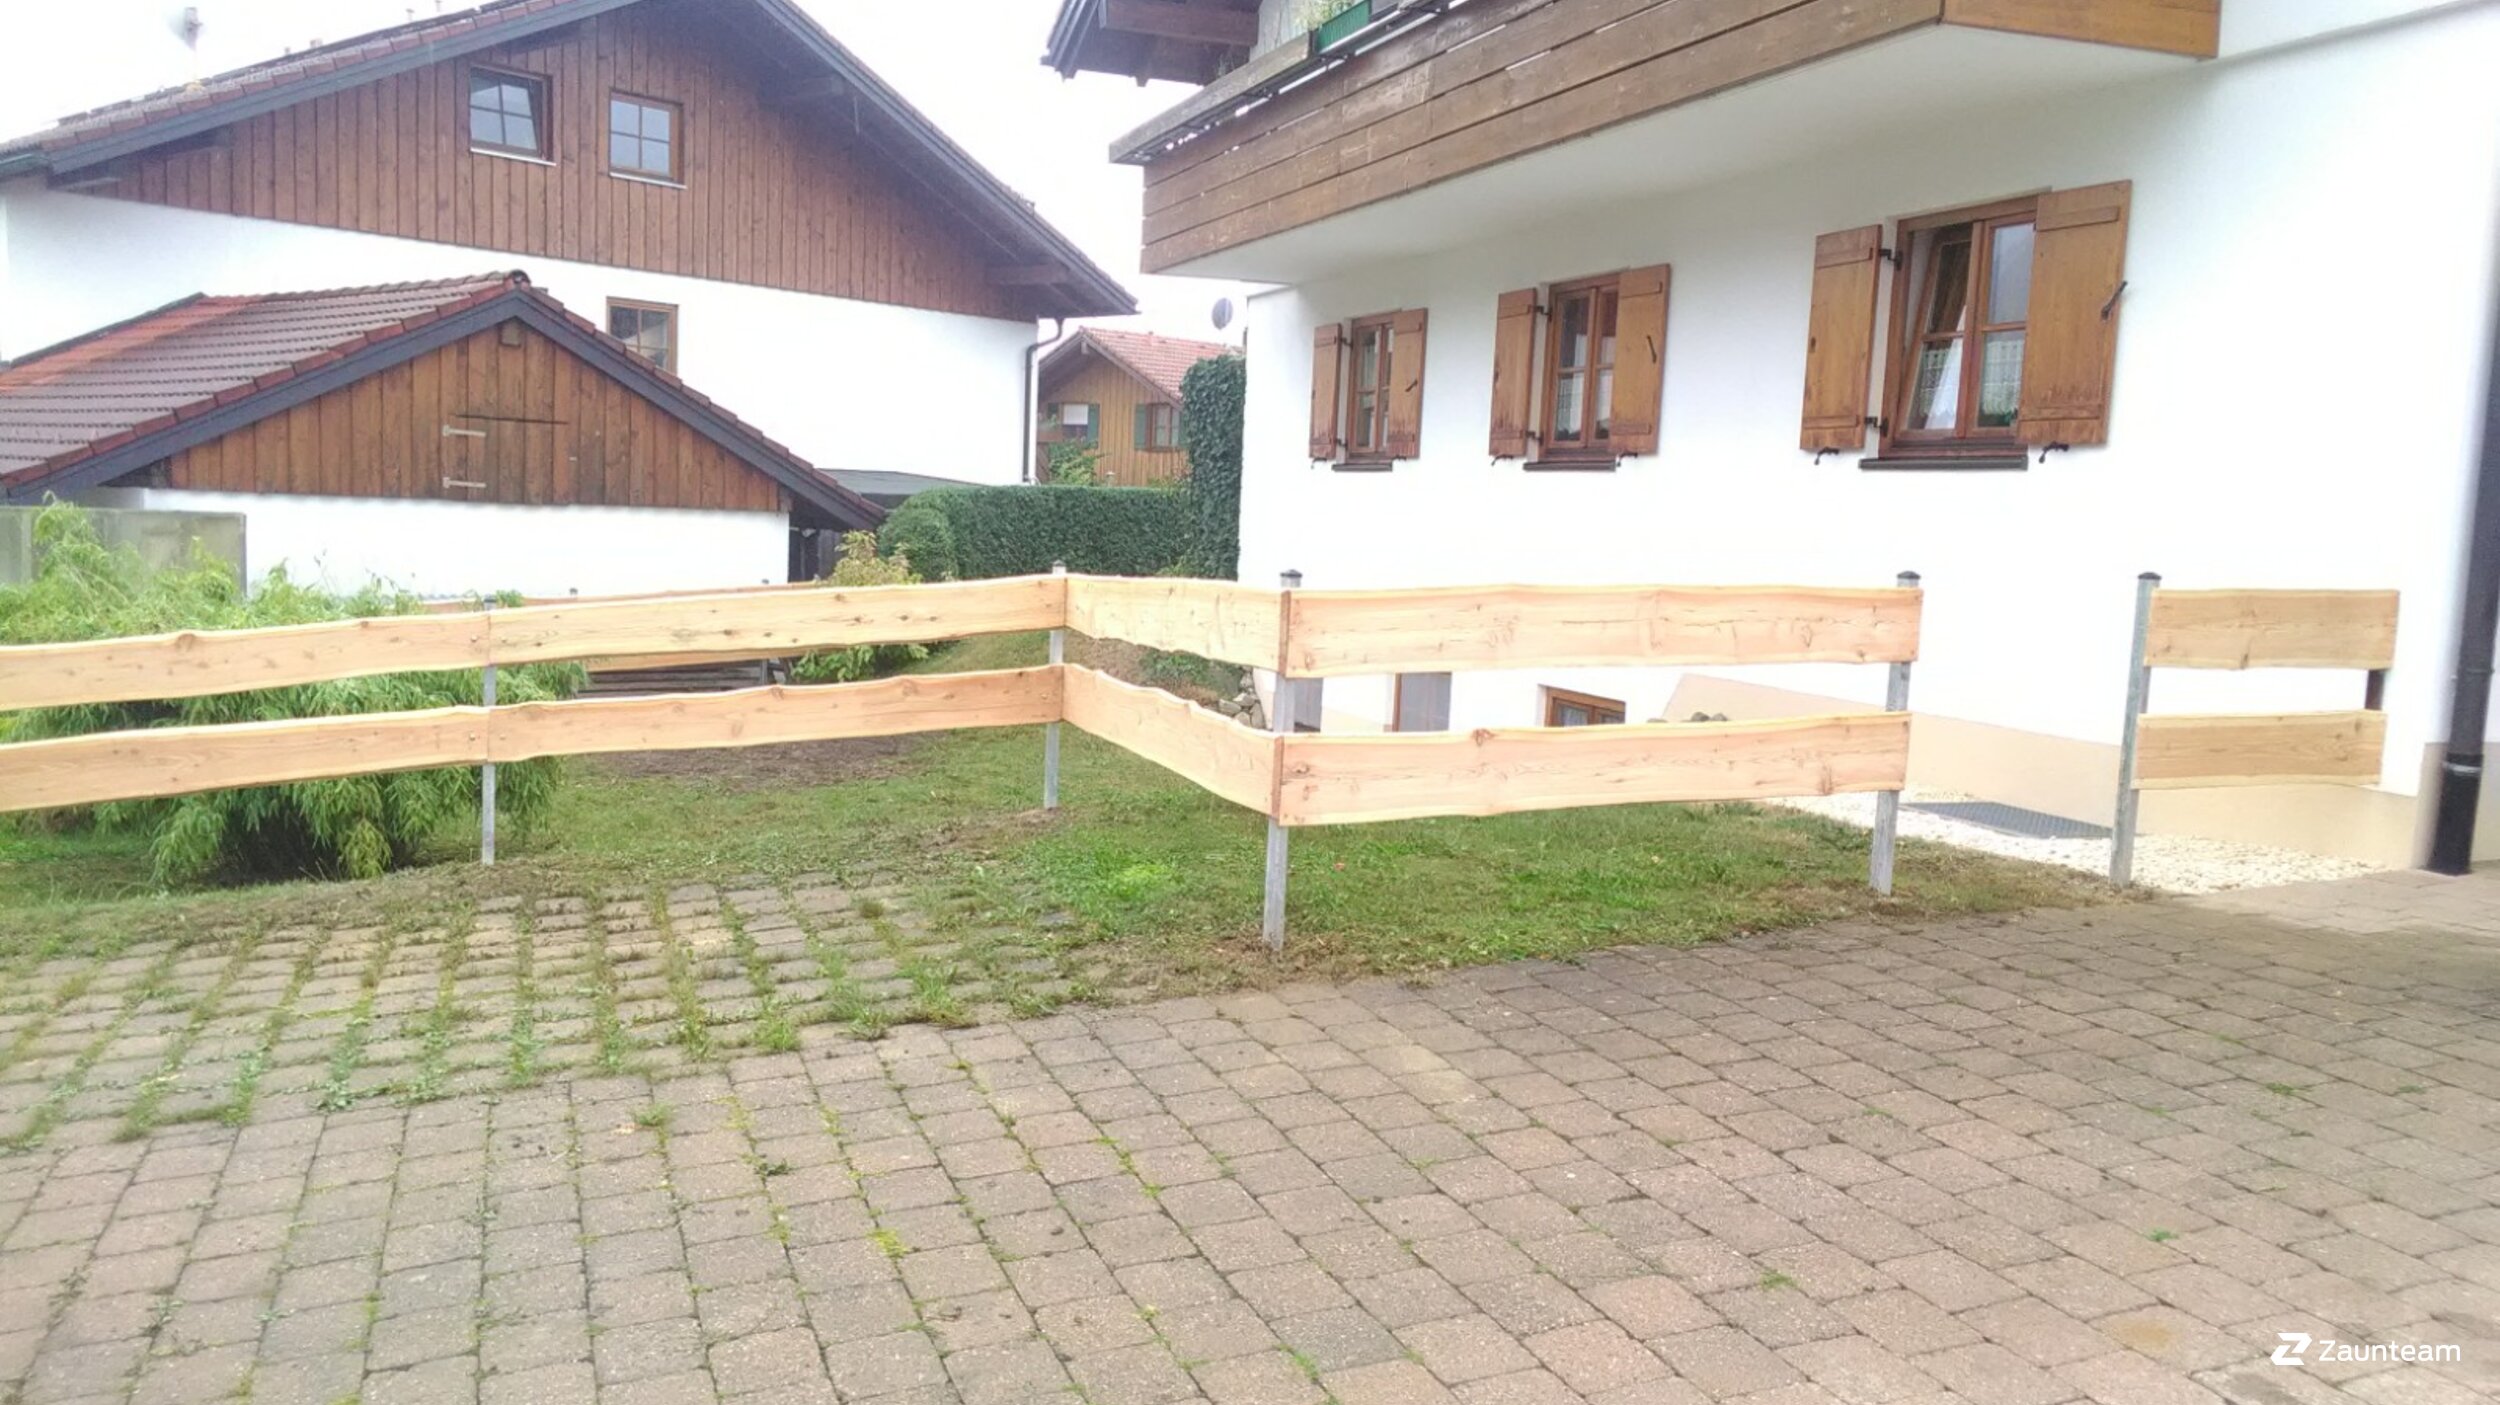 Clôture ranch de 2018 à 87549 Rettenberg Allemagne de Zaunteam Allgäu.